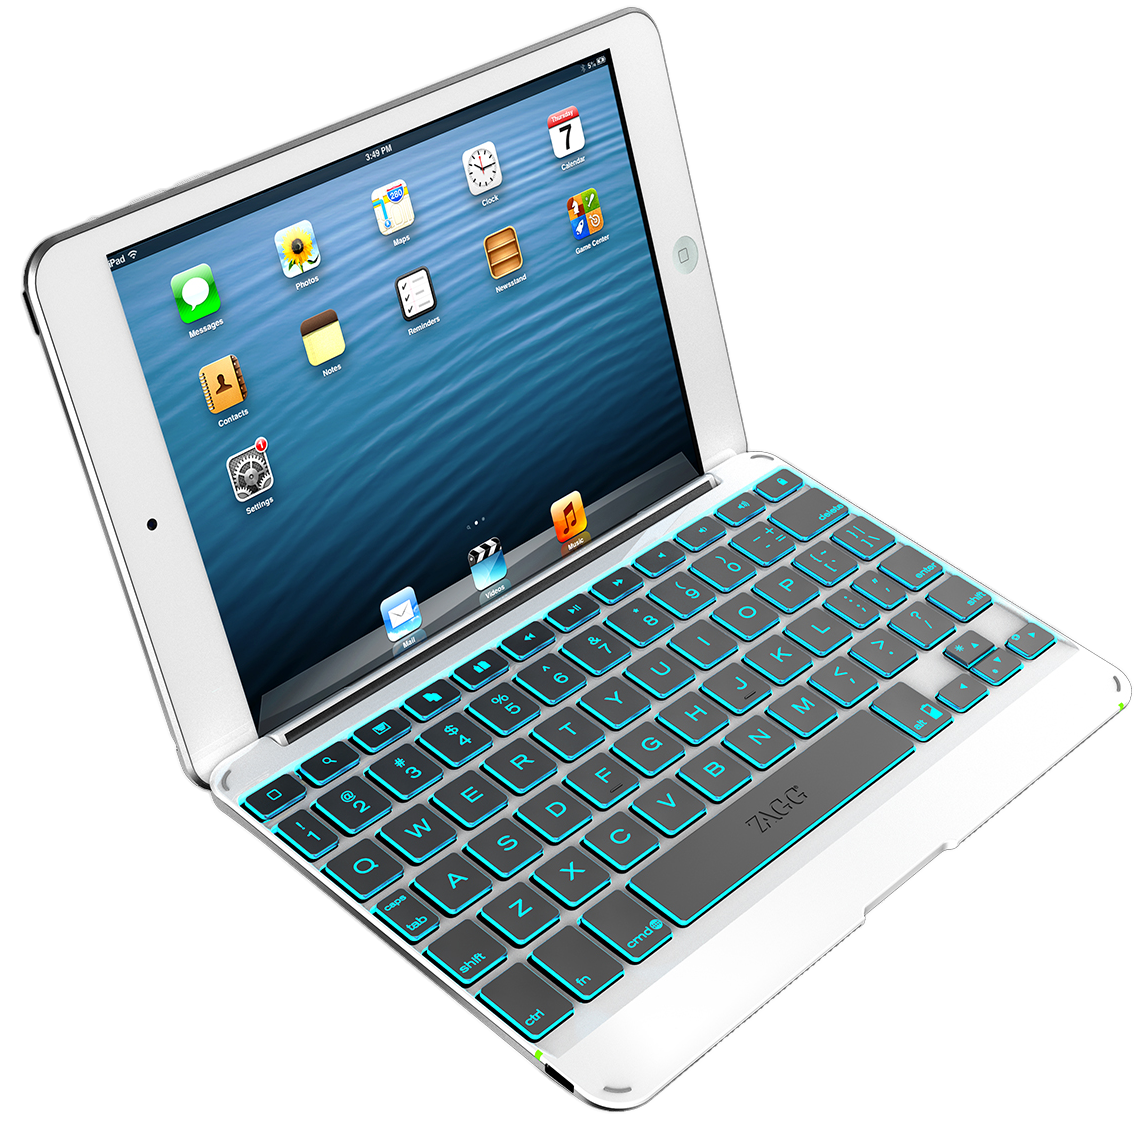 helgen tidligste bag ZAGG Bluetooth keyboard case for iPad mini w/ backlit keys $26 shipped  (orig. $100)